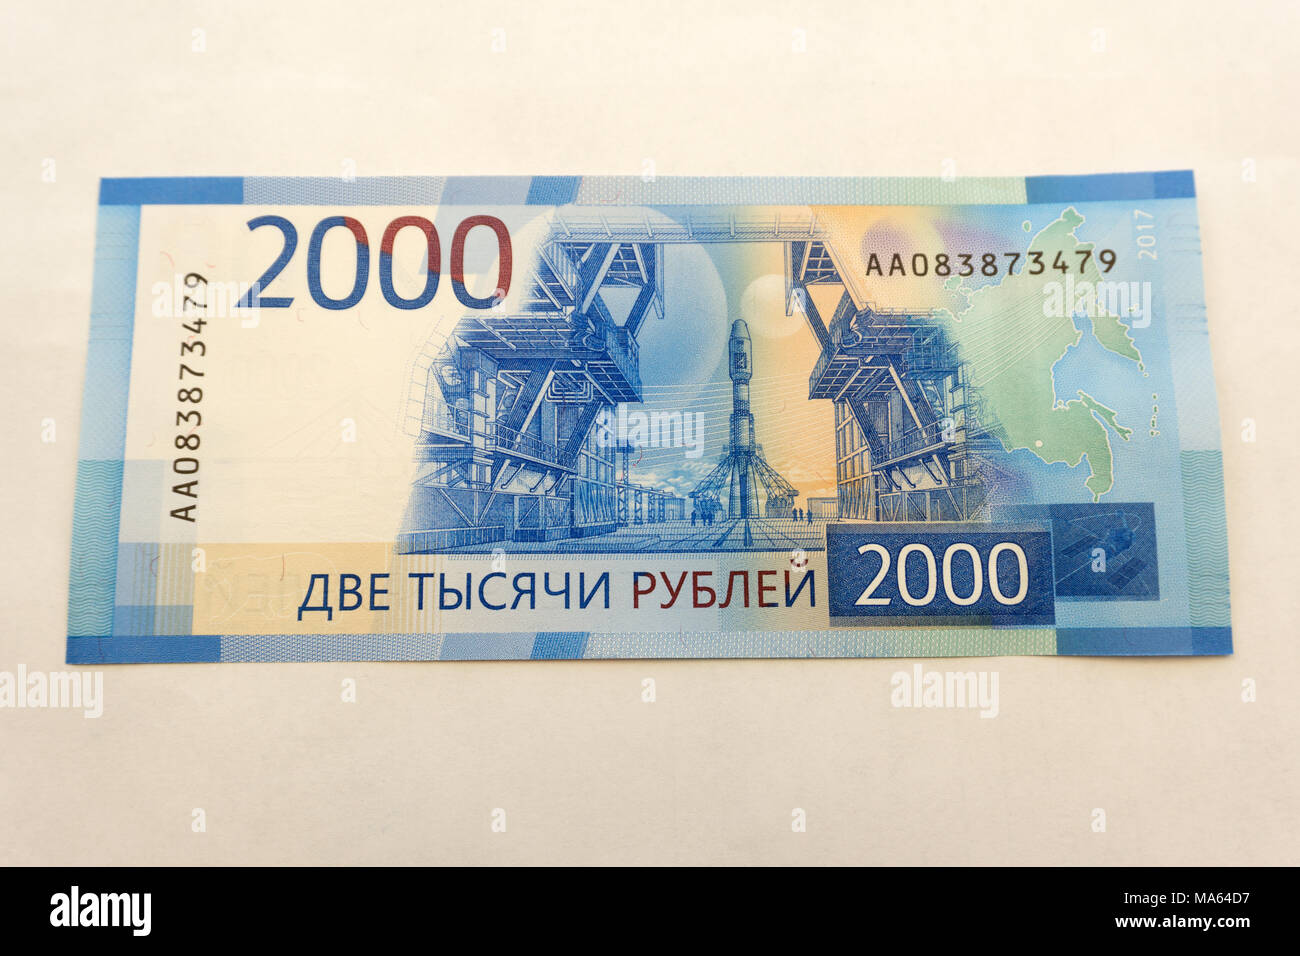 Купюры 2000 года. Купюра 2000. Купюра 2000 рублей. Банкнота 2000 руб. 2000 Рублей бумажка.